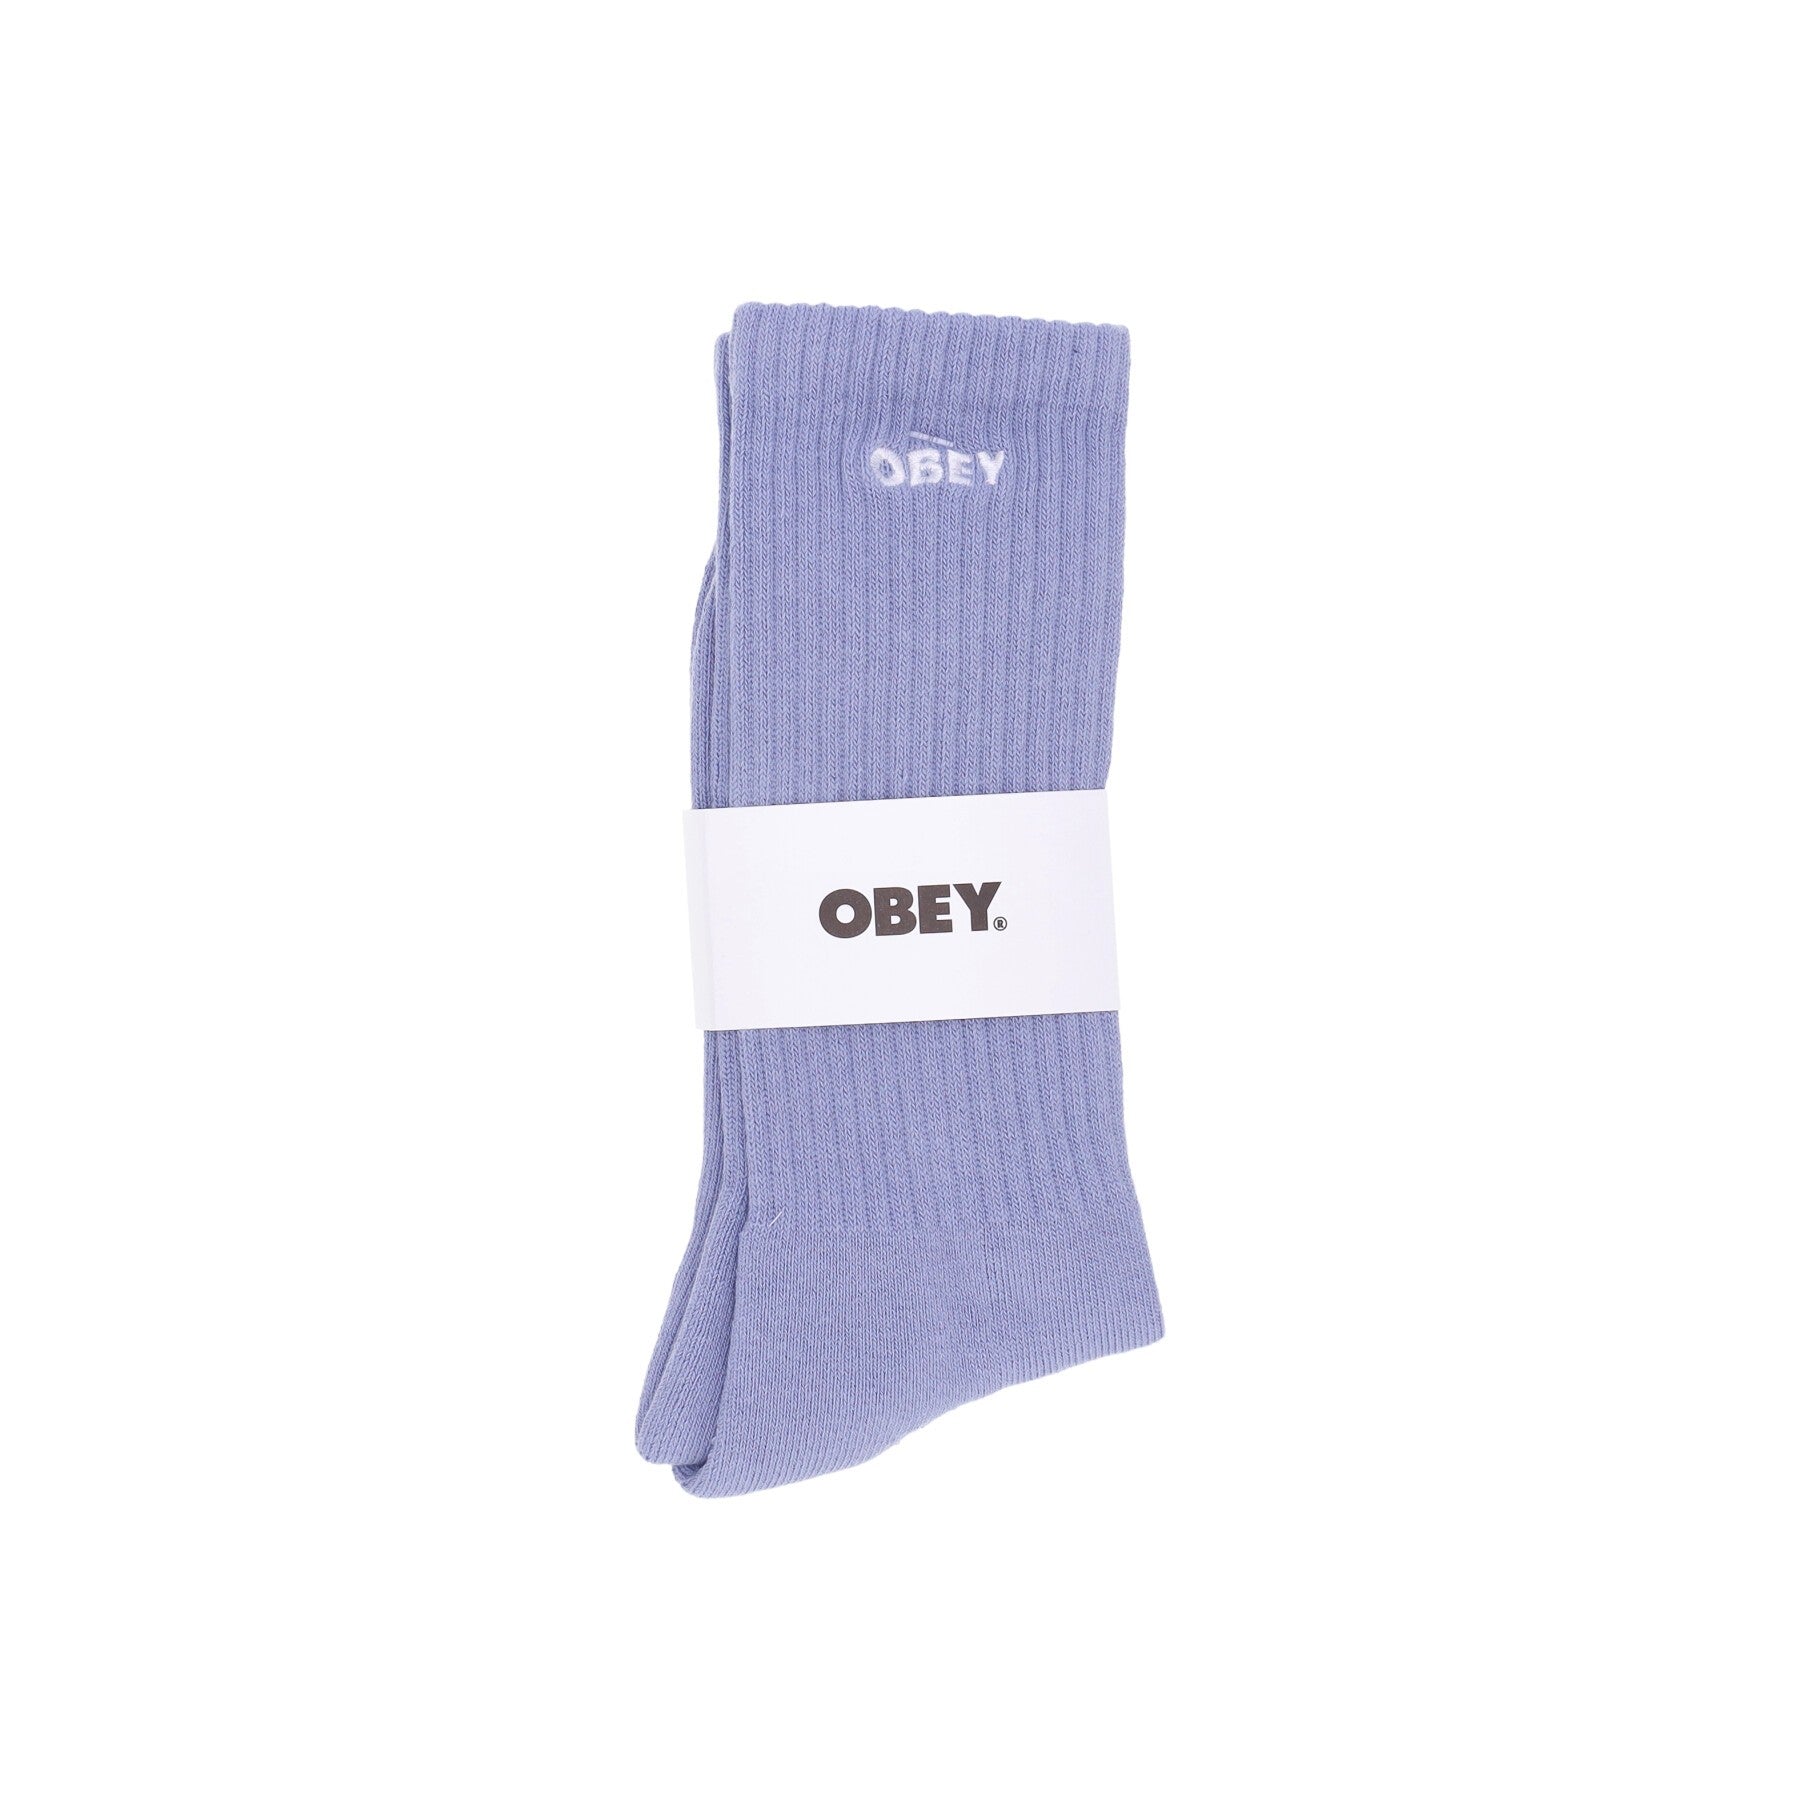 Obey, Calza Media Uomo Bold Socks, Digital Lavender